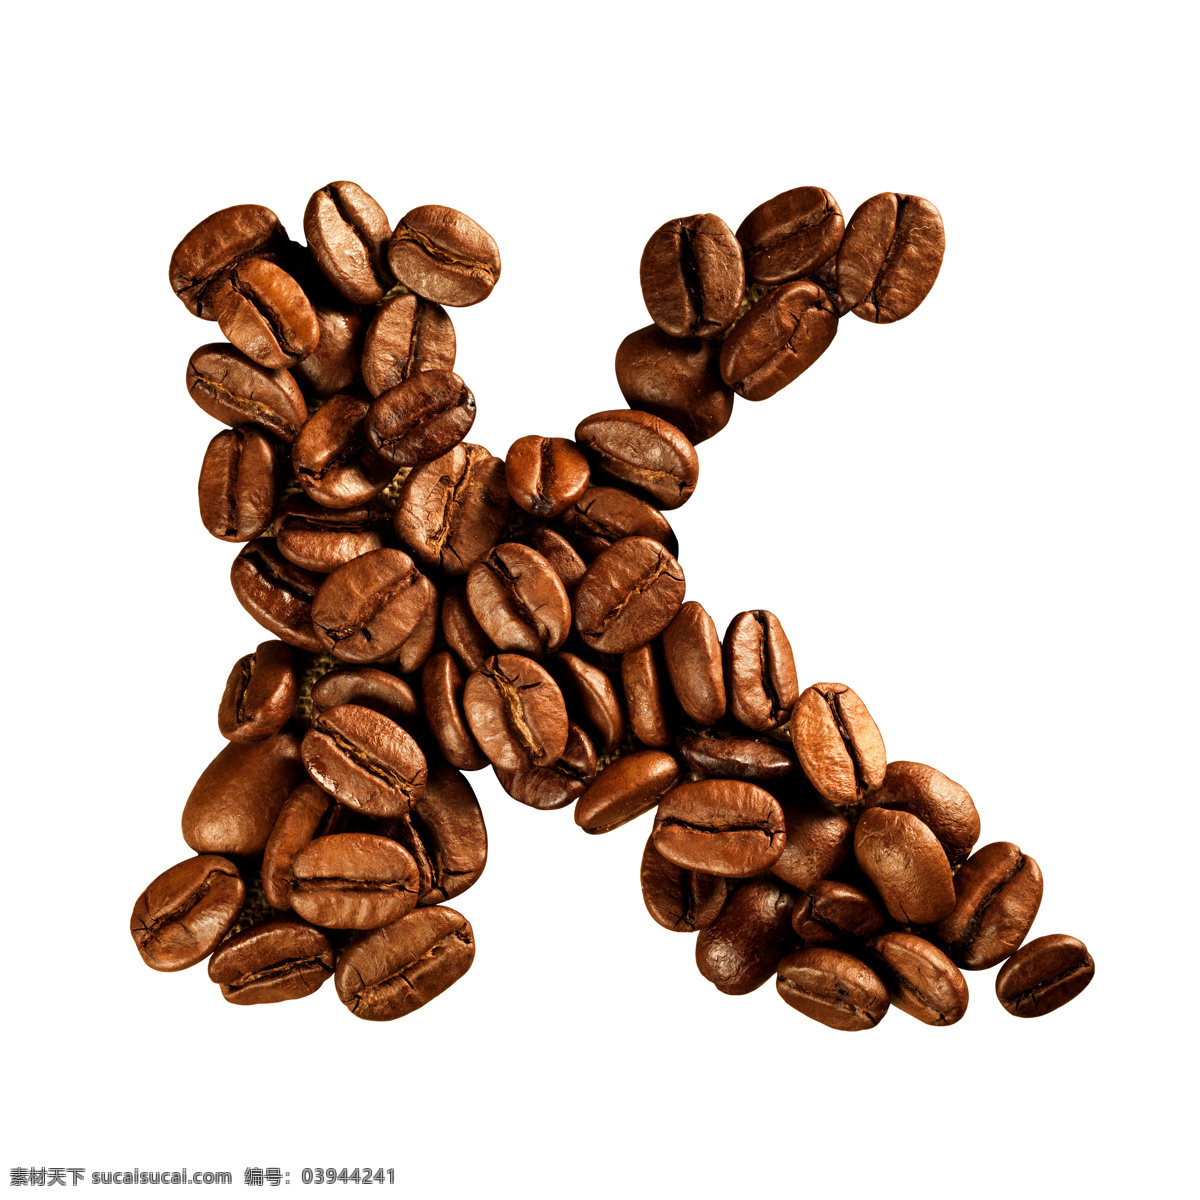 咖啡豆 组成 字母 k 咖啡 文字 艺术字体 书画文字 文化艺术 白色